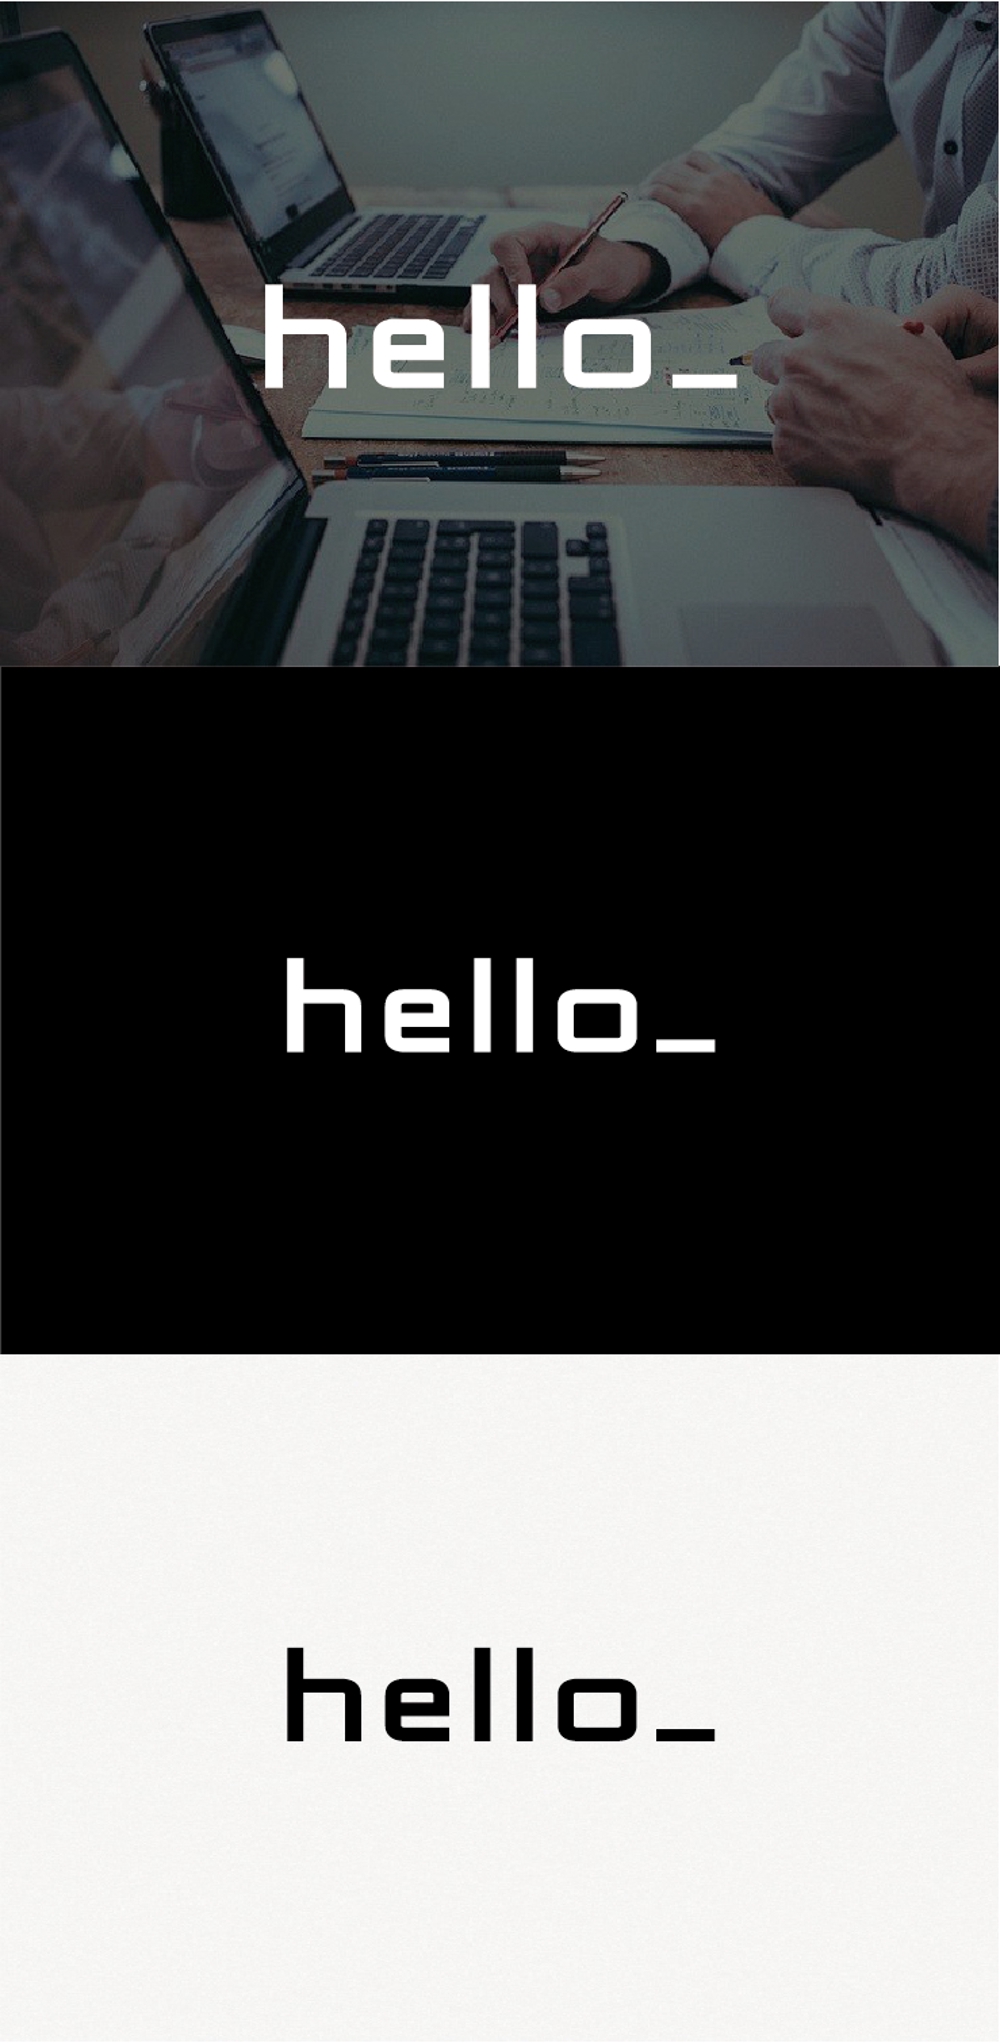 会社名「hello」のロゴ